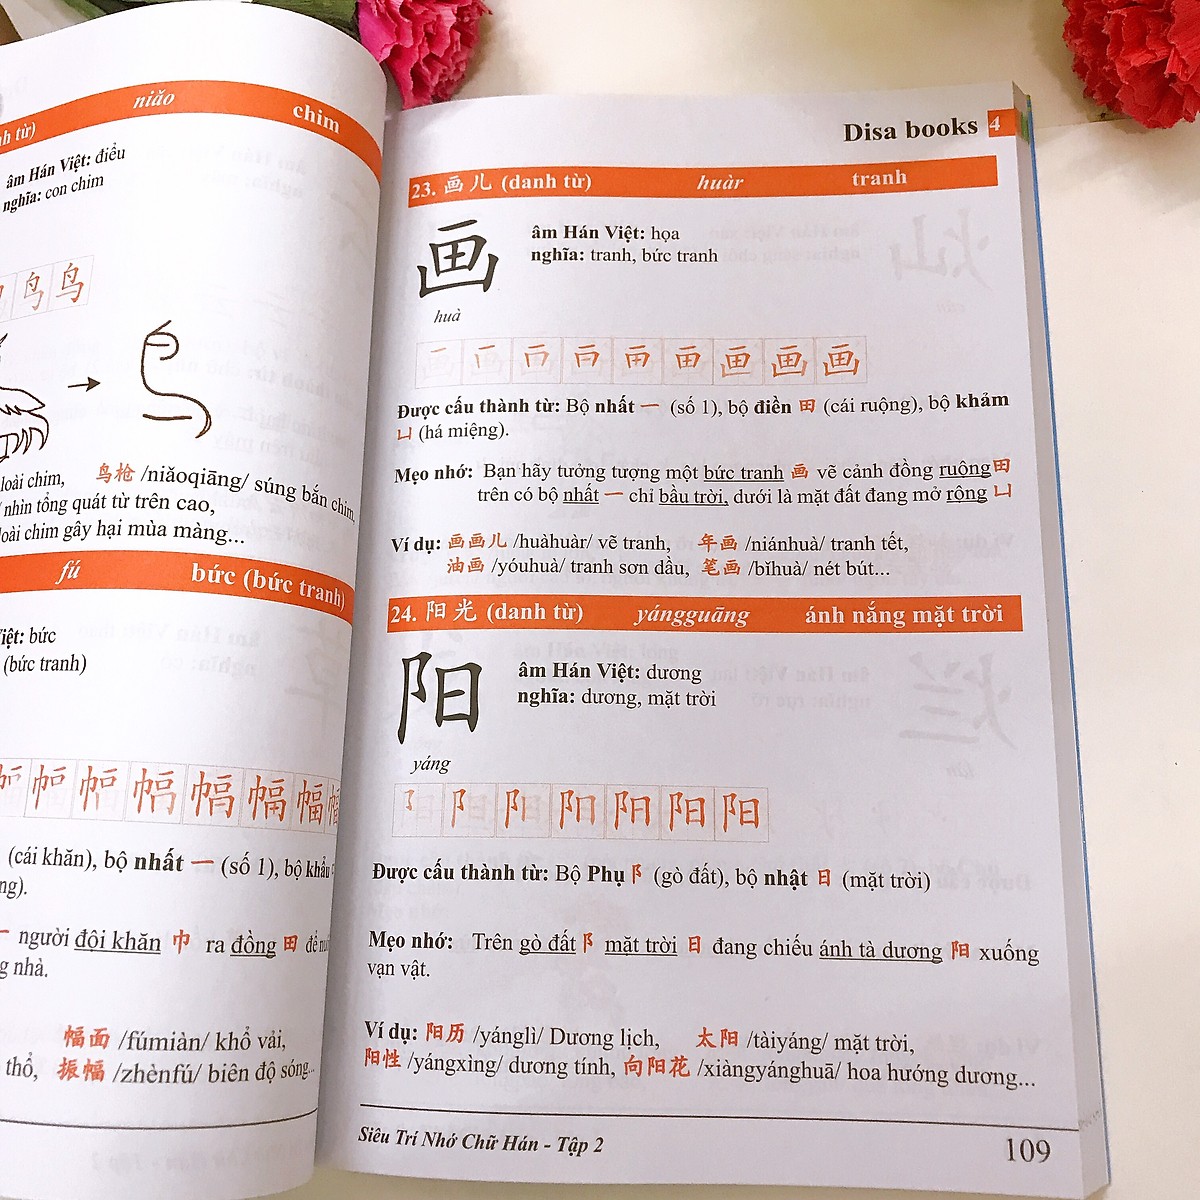 Combo 4 sách: Siêu trí nhớ chữ Hán tập 01 + tập 02 + tập 03 + 5000 từ vựng tiếng Trung thông dụng nhất và DVD tài liệu nghe